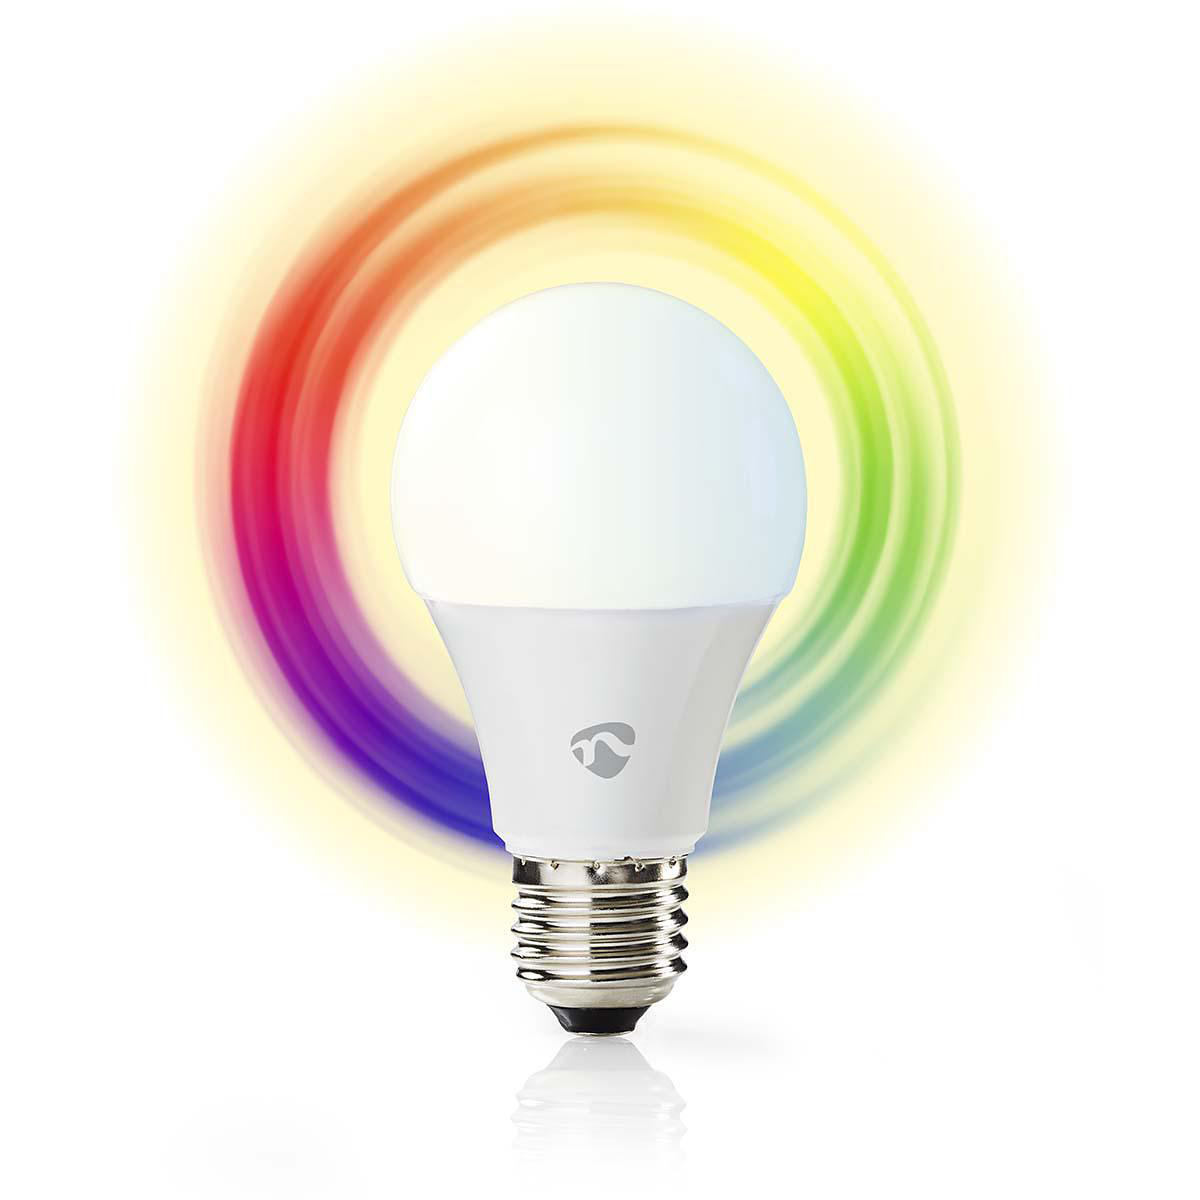 Nedis WiFi Smart LED-lampa E27 - Fullfärg och varmvitt